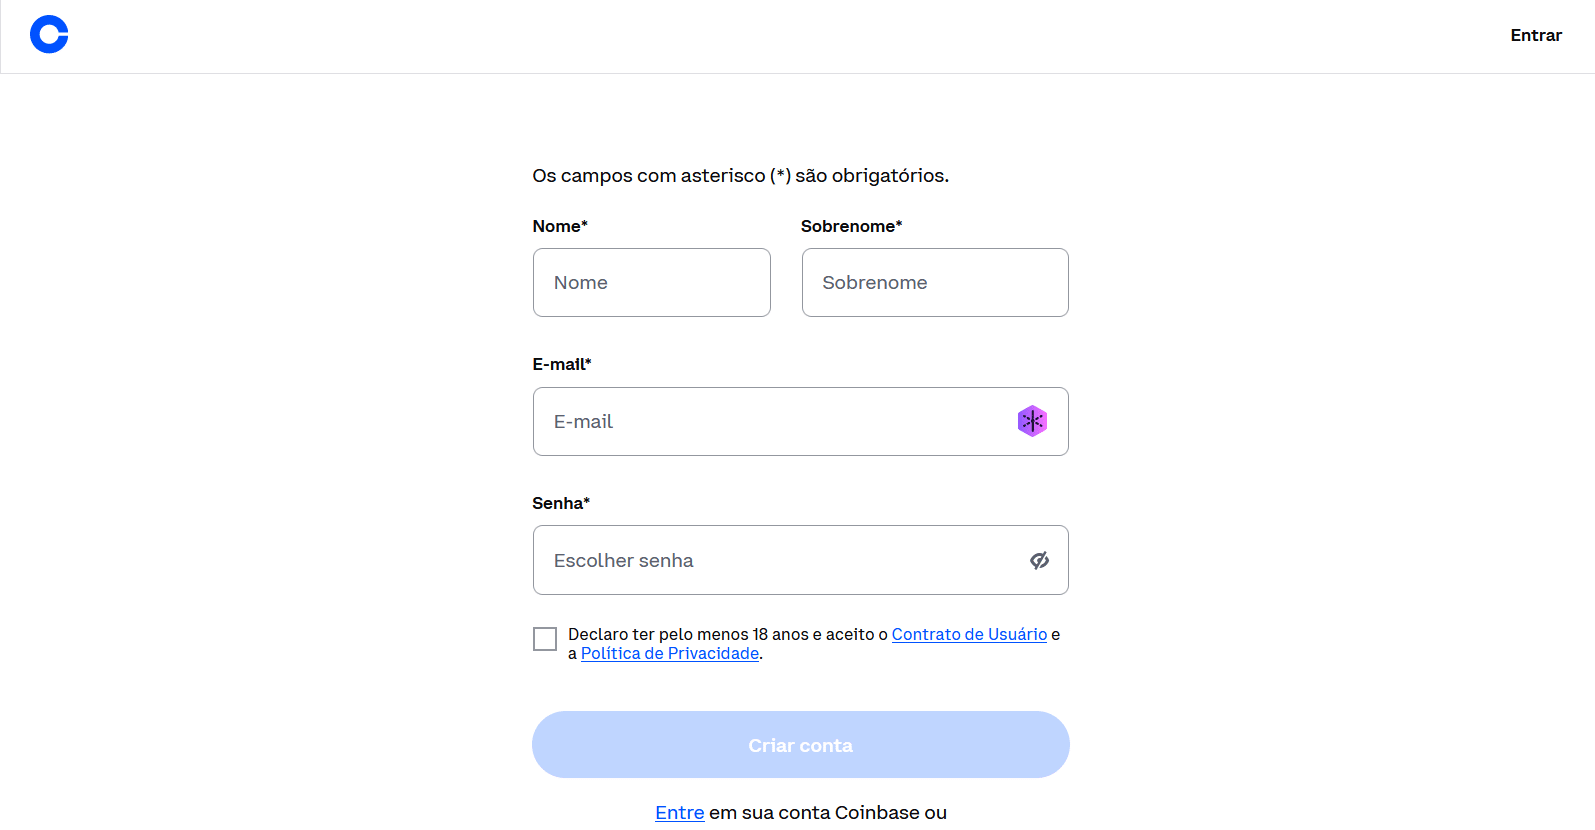 formulário de cadastro da Coinbase com campos para inserção do nome, sobrenome, email e senha.